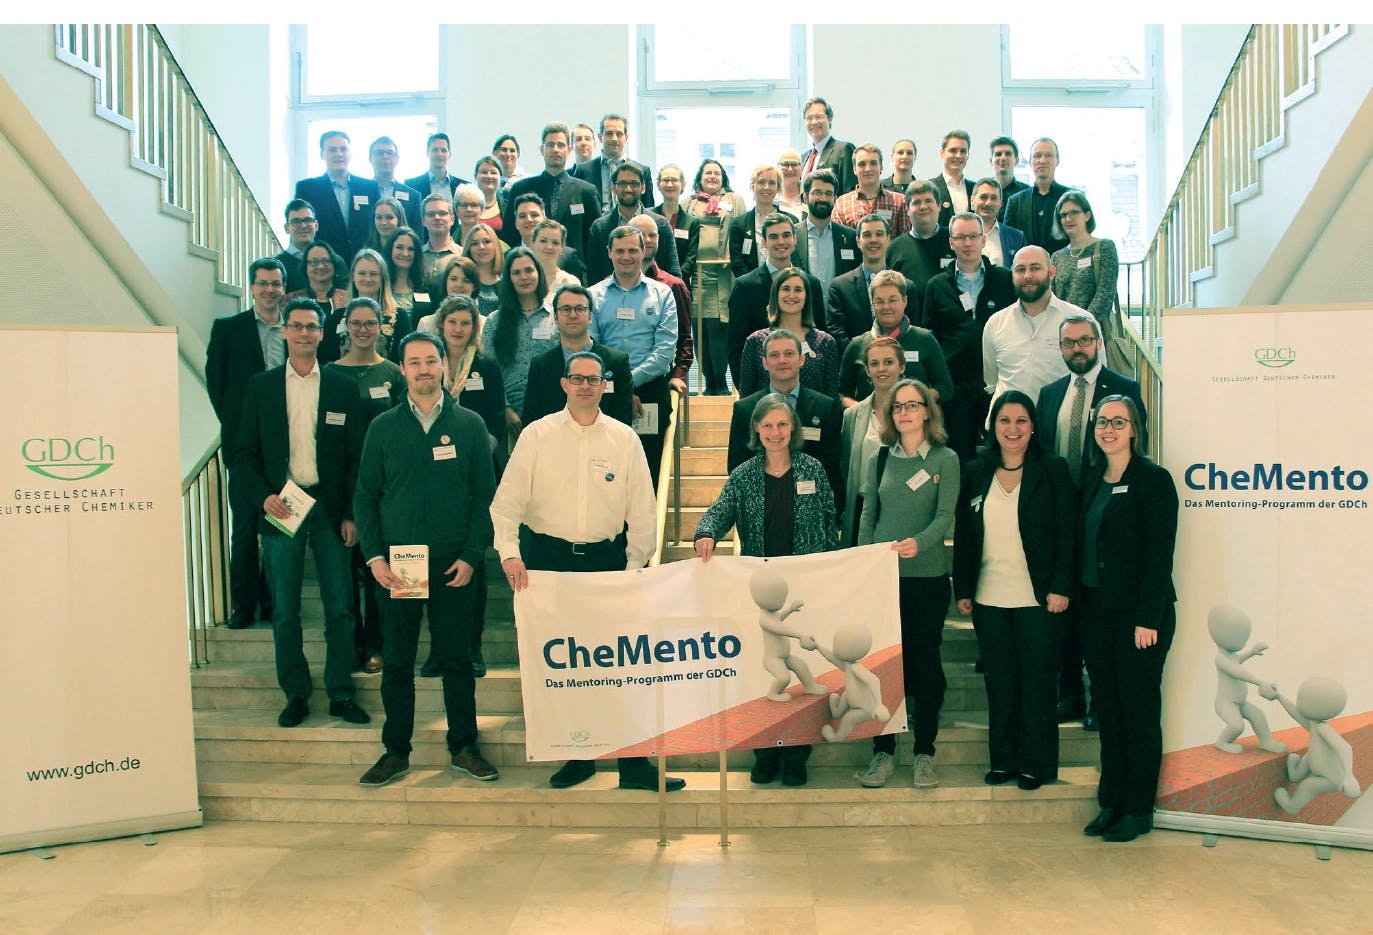 GDCh‐Mentoring‐Programm CheMento in die 3. Runde gestartet